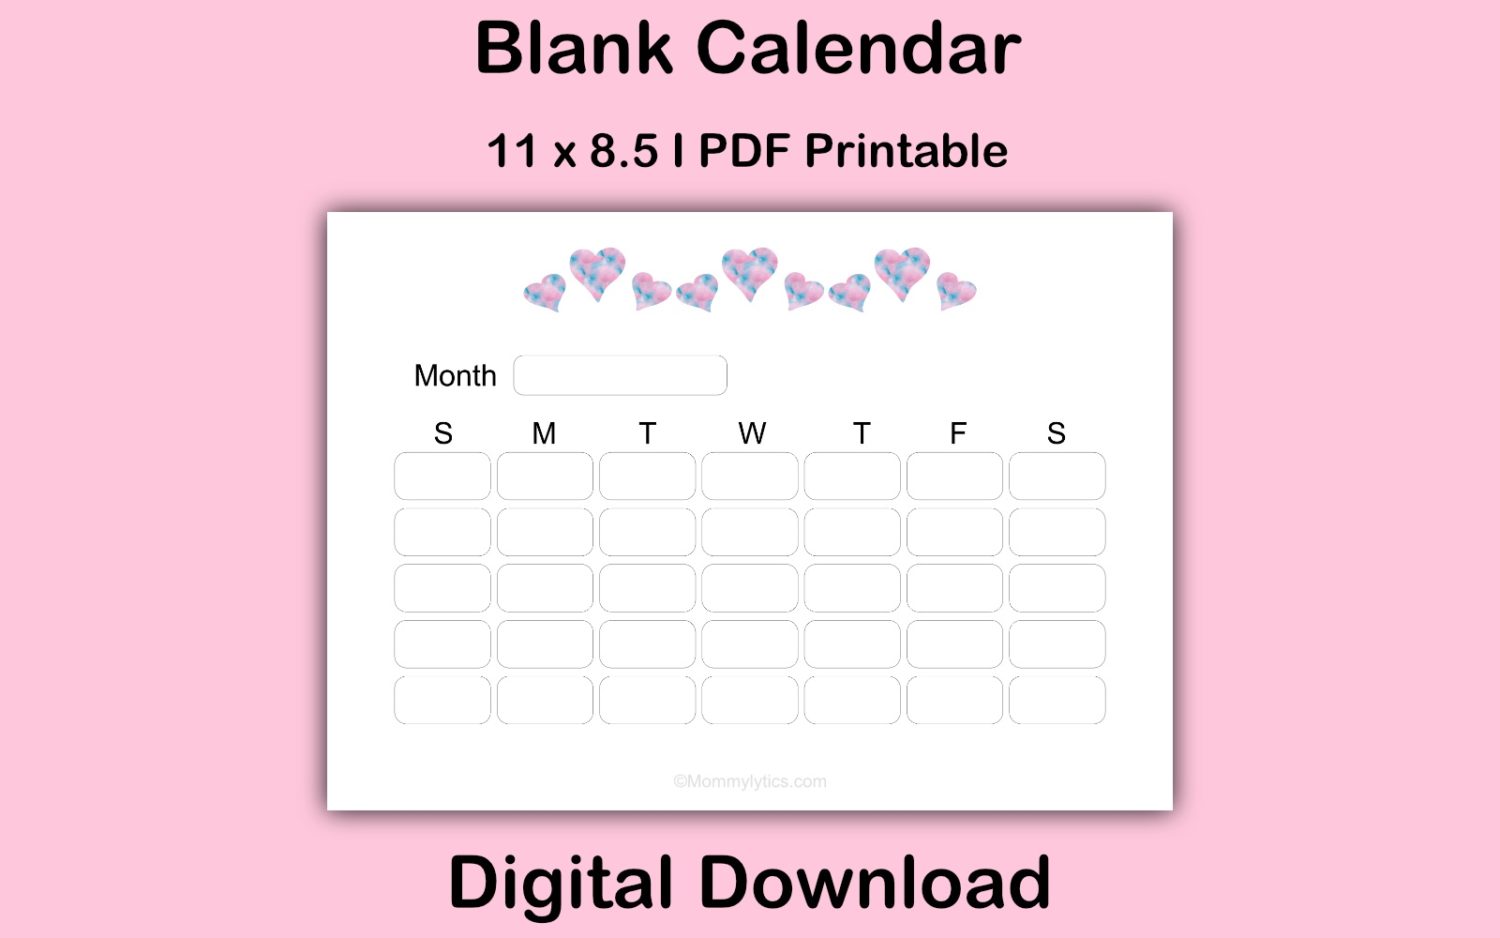 Blank calendar